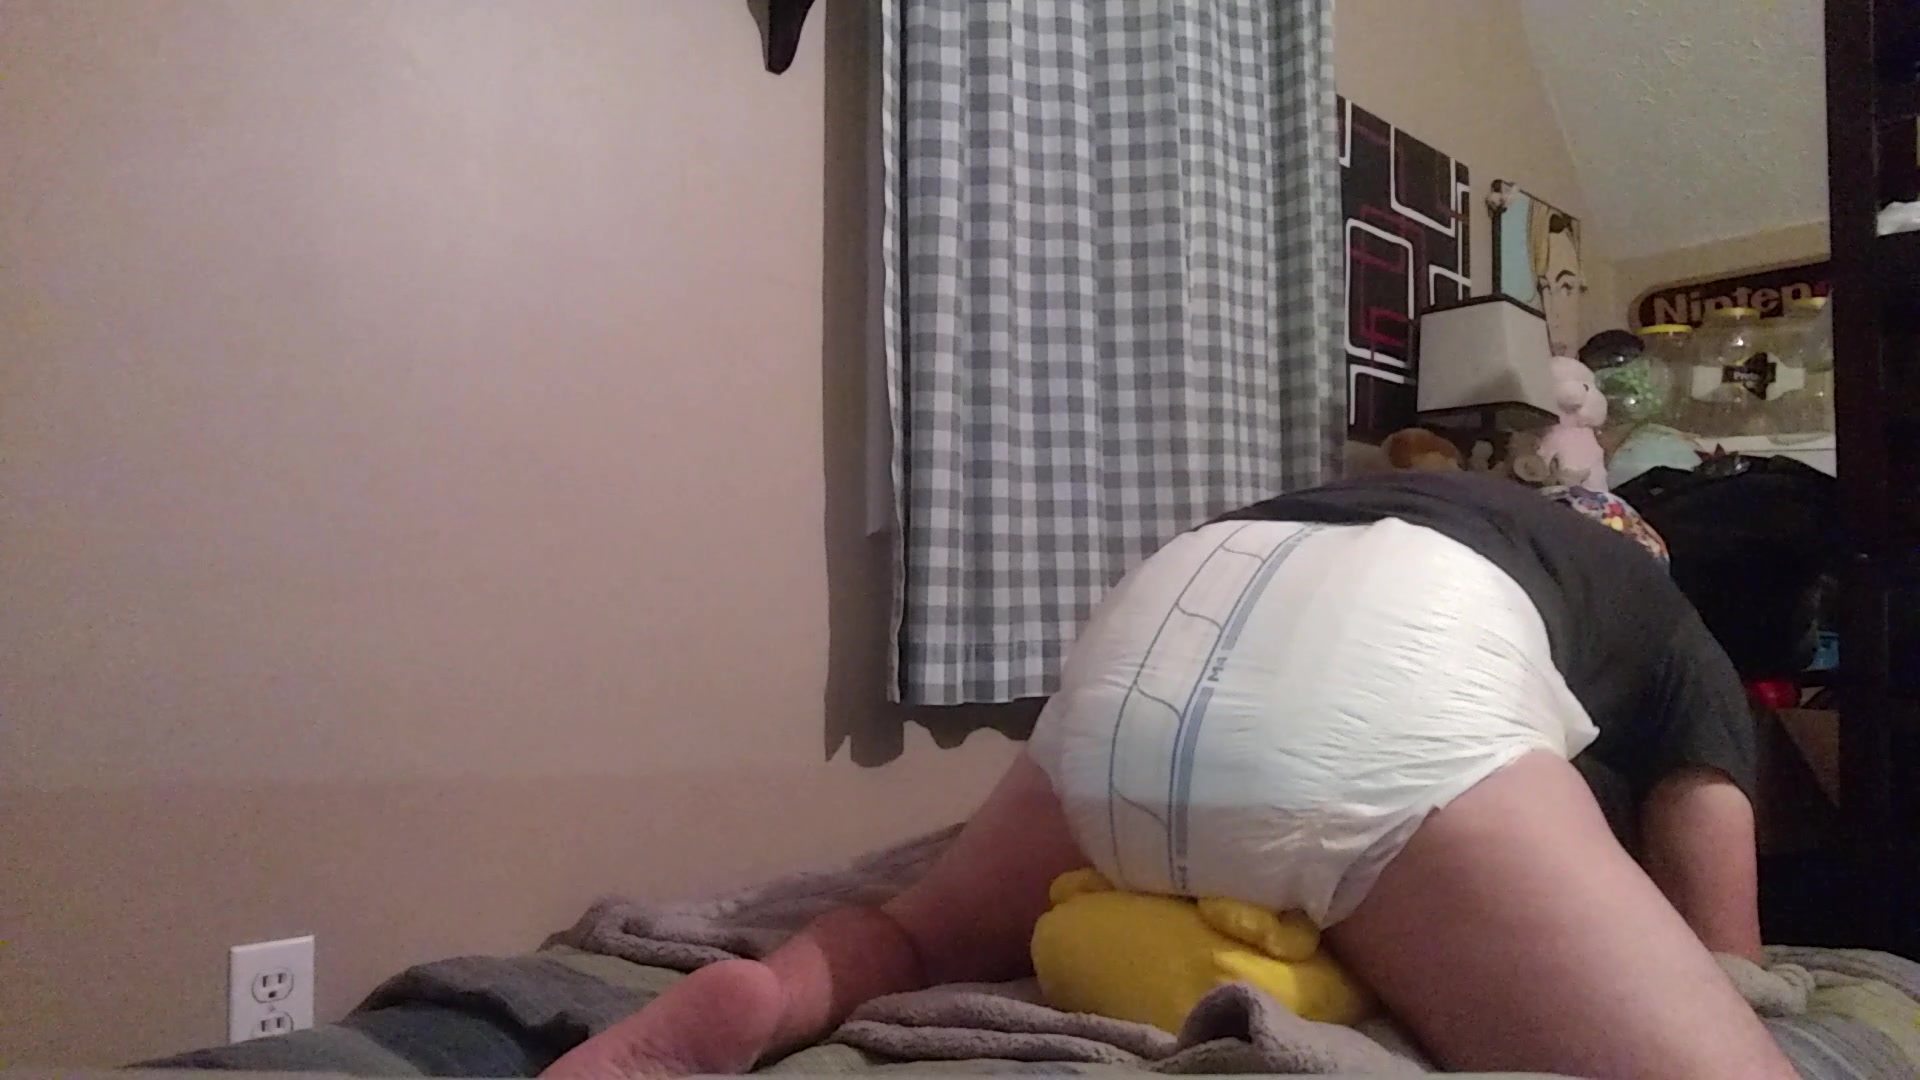 Diaper Nerd humps Pikachu